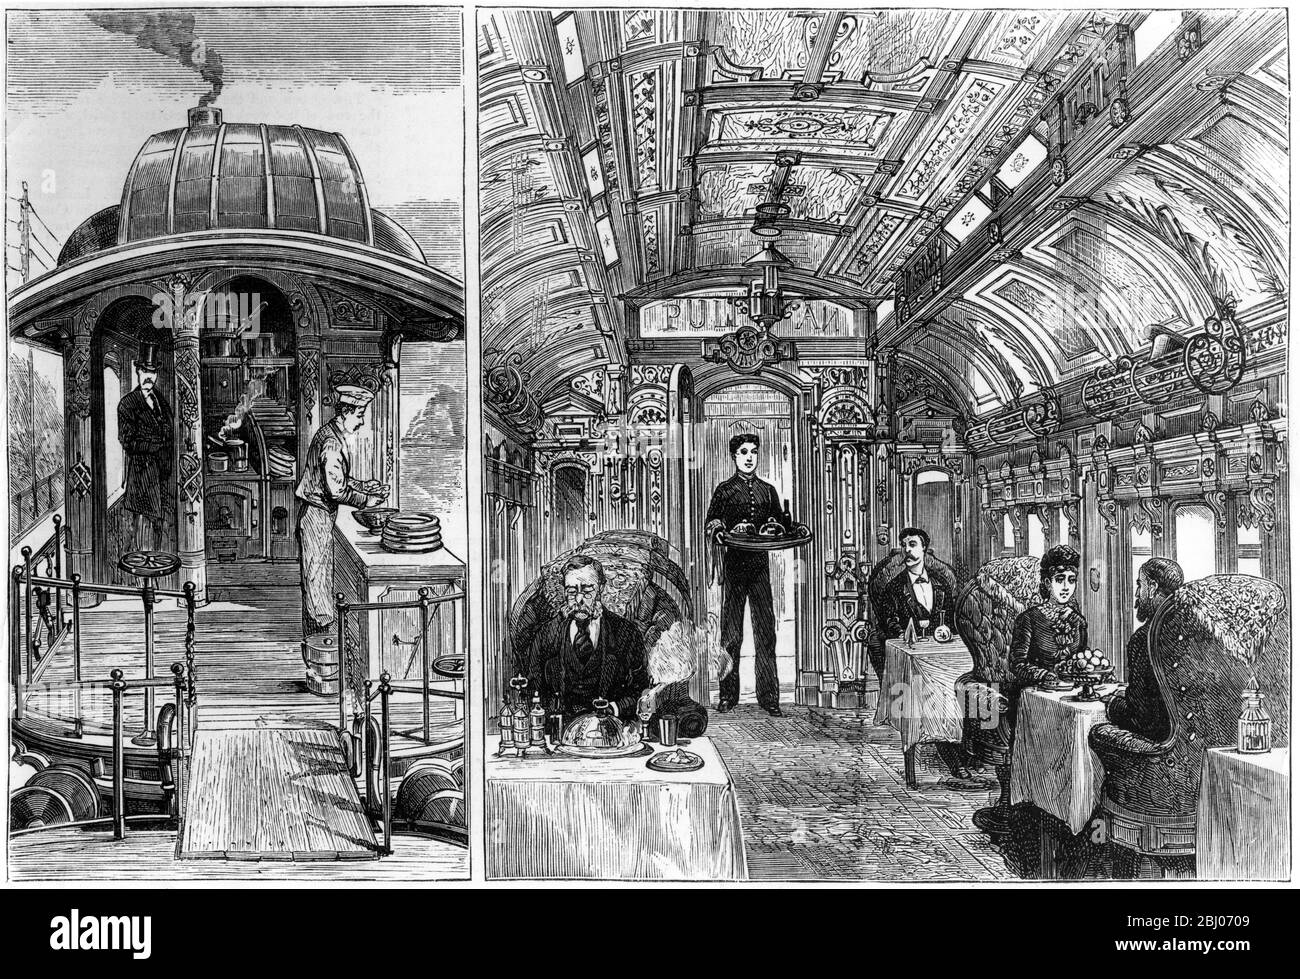 La nouvelle voiture Pullman sur le Great Northern Railway - la cuisine (à gauche) - la salle à manger (à droite) - 1879 Banque D'Images